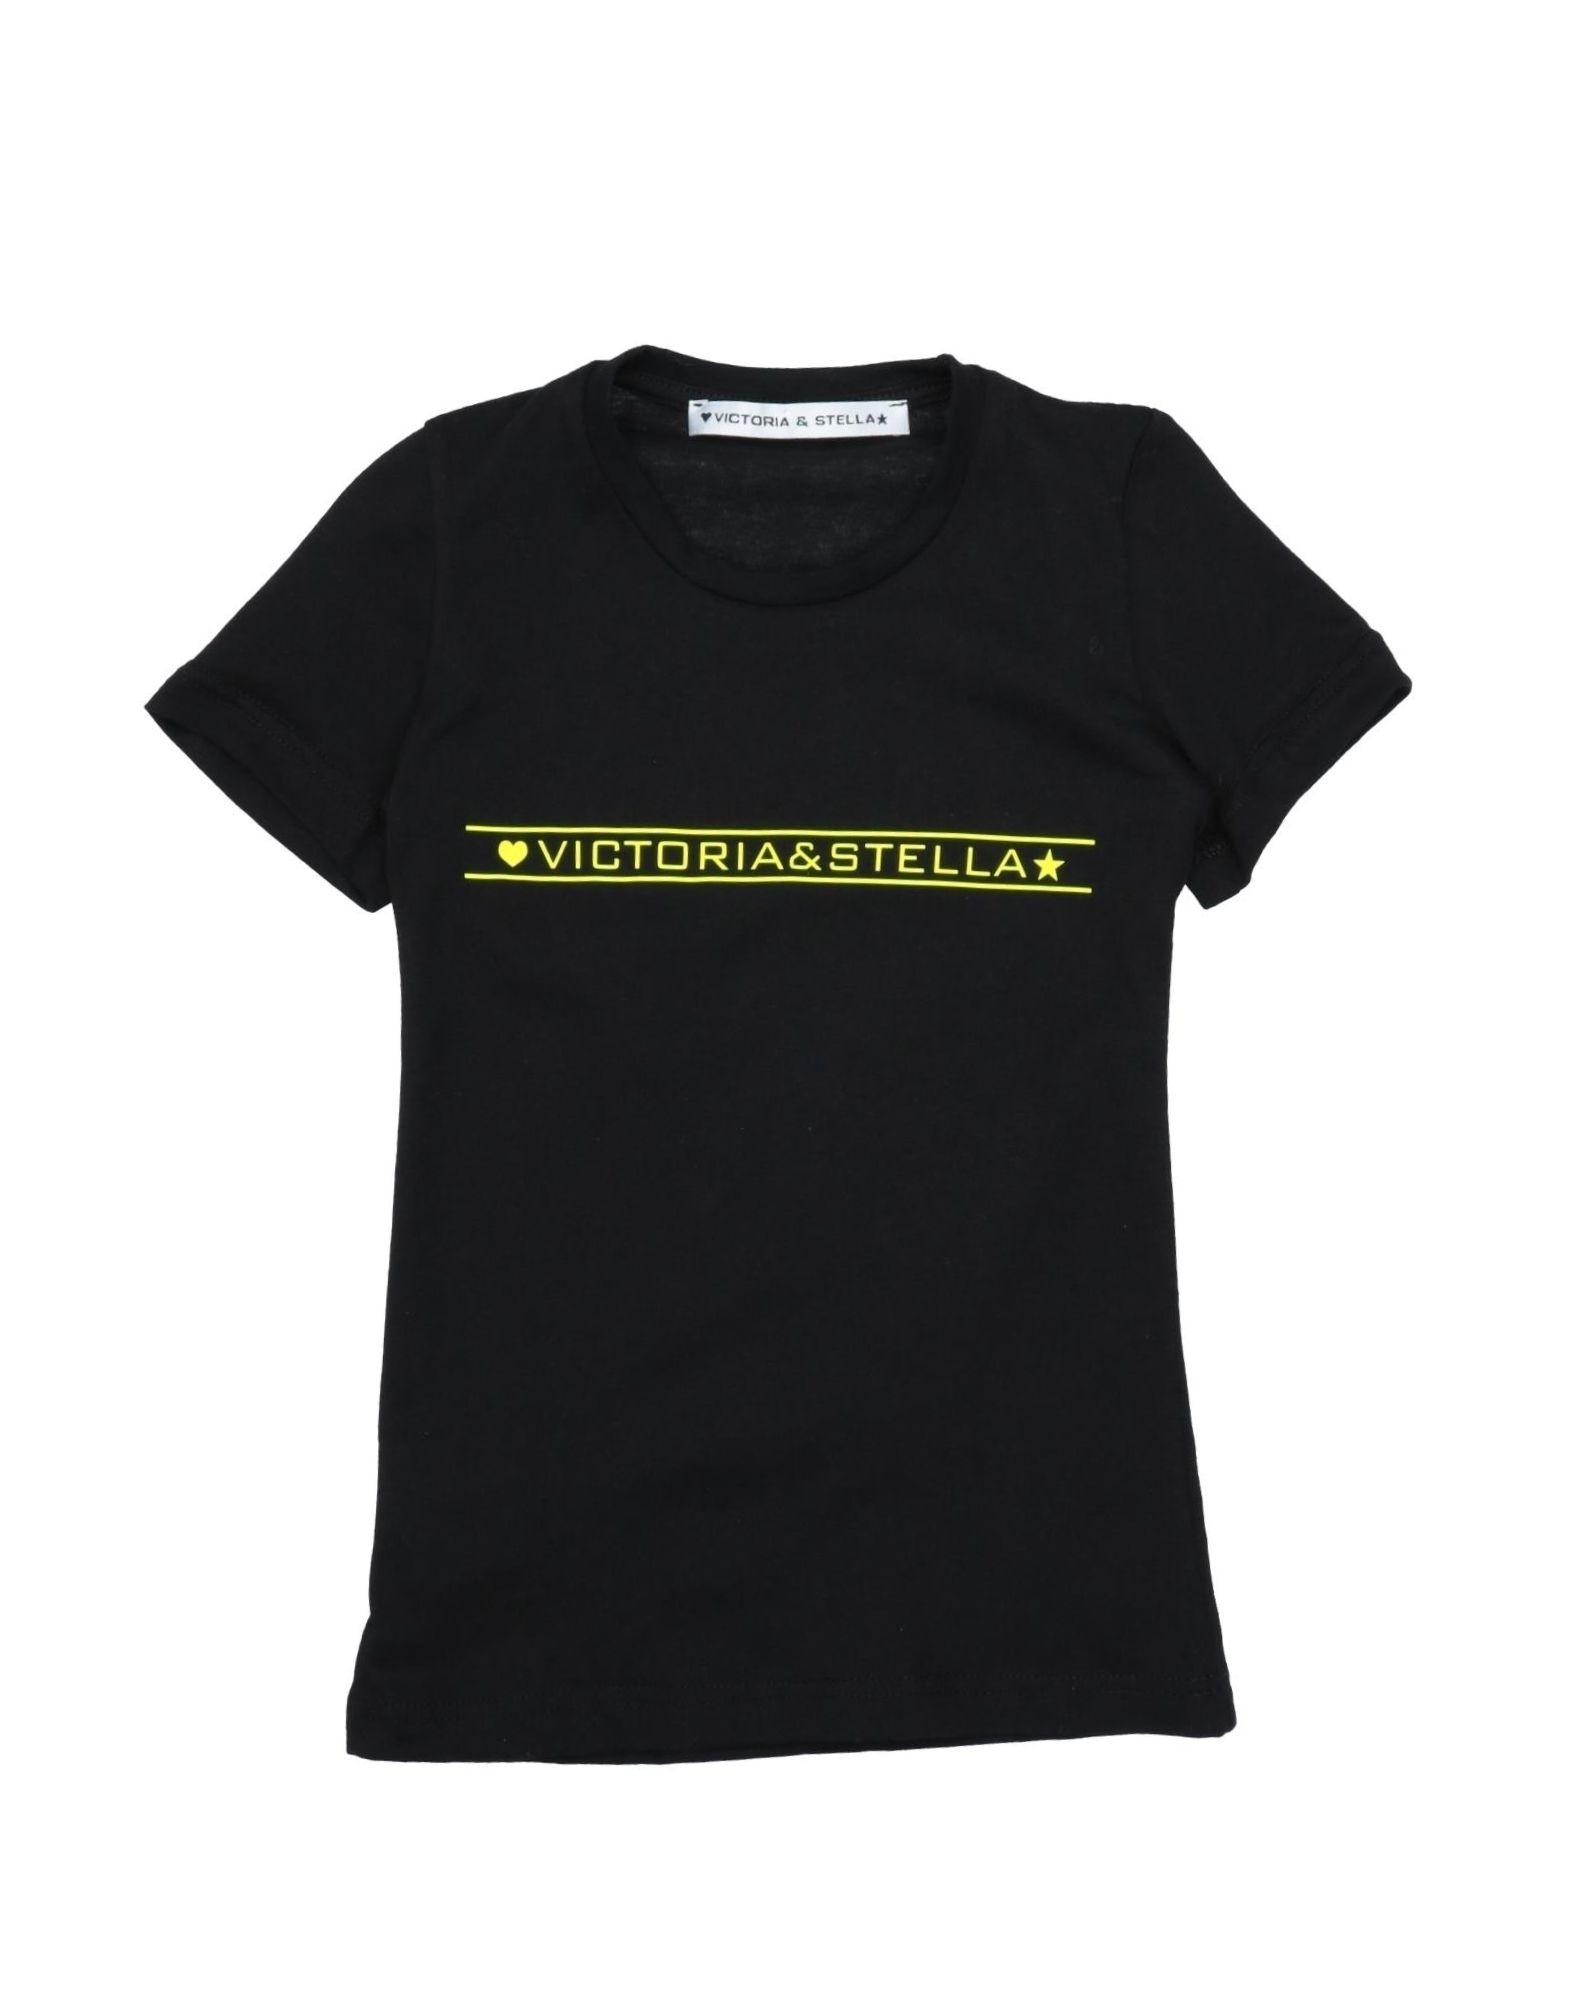 Victoria & Stella Kids' T-shirts In Black